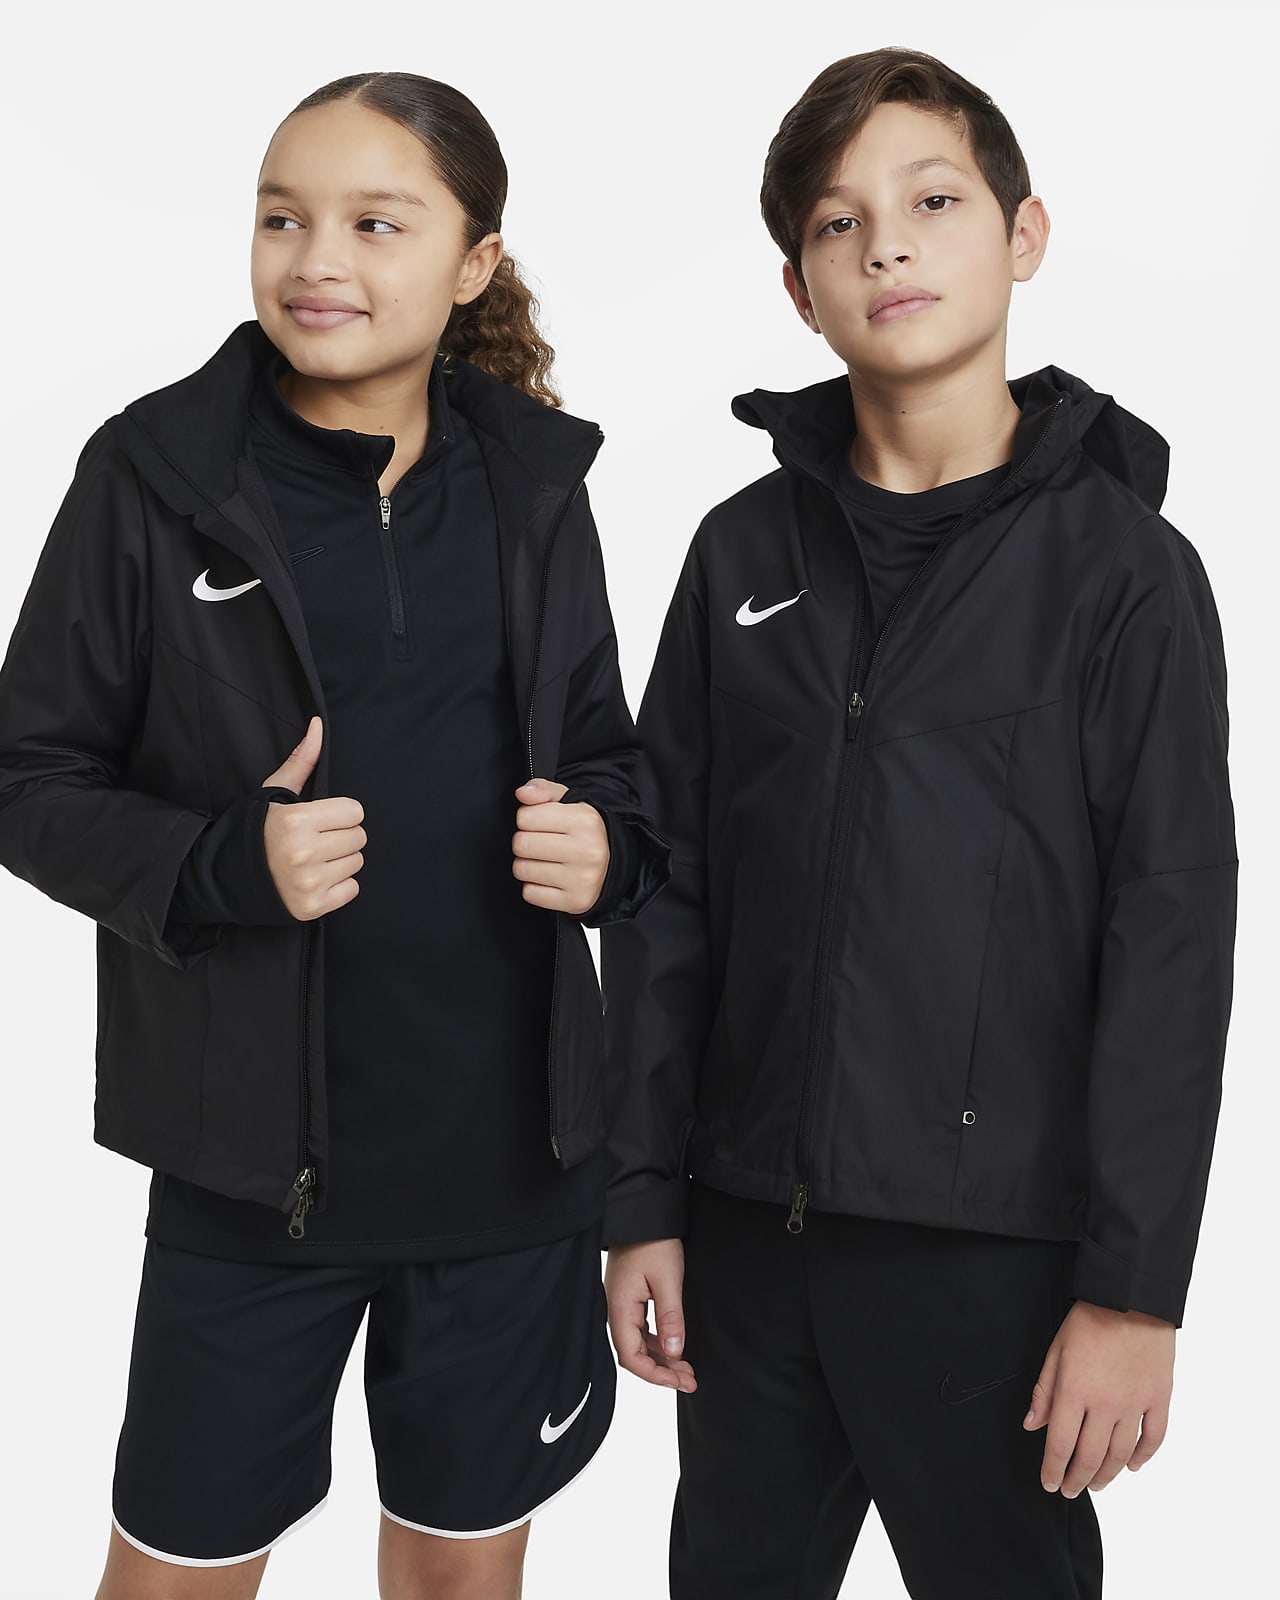 Mejeriprodukter kæmpe stor Kristus Nike Storm-FIT Academy23-fodboldregnjakke til større børn. Nike DK